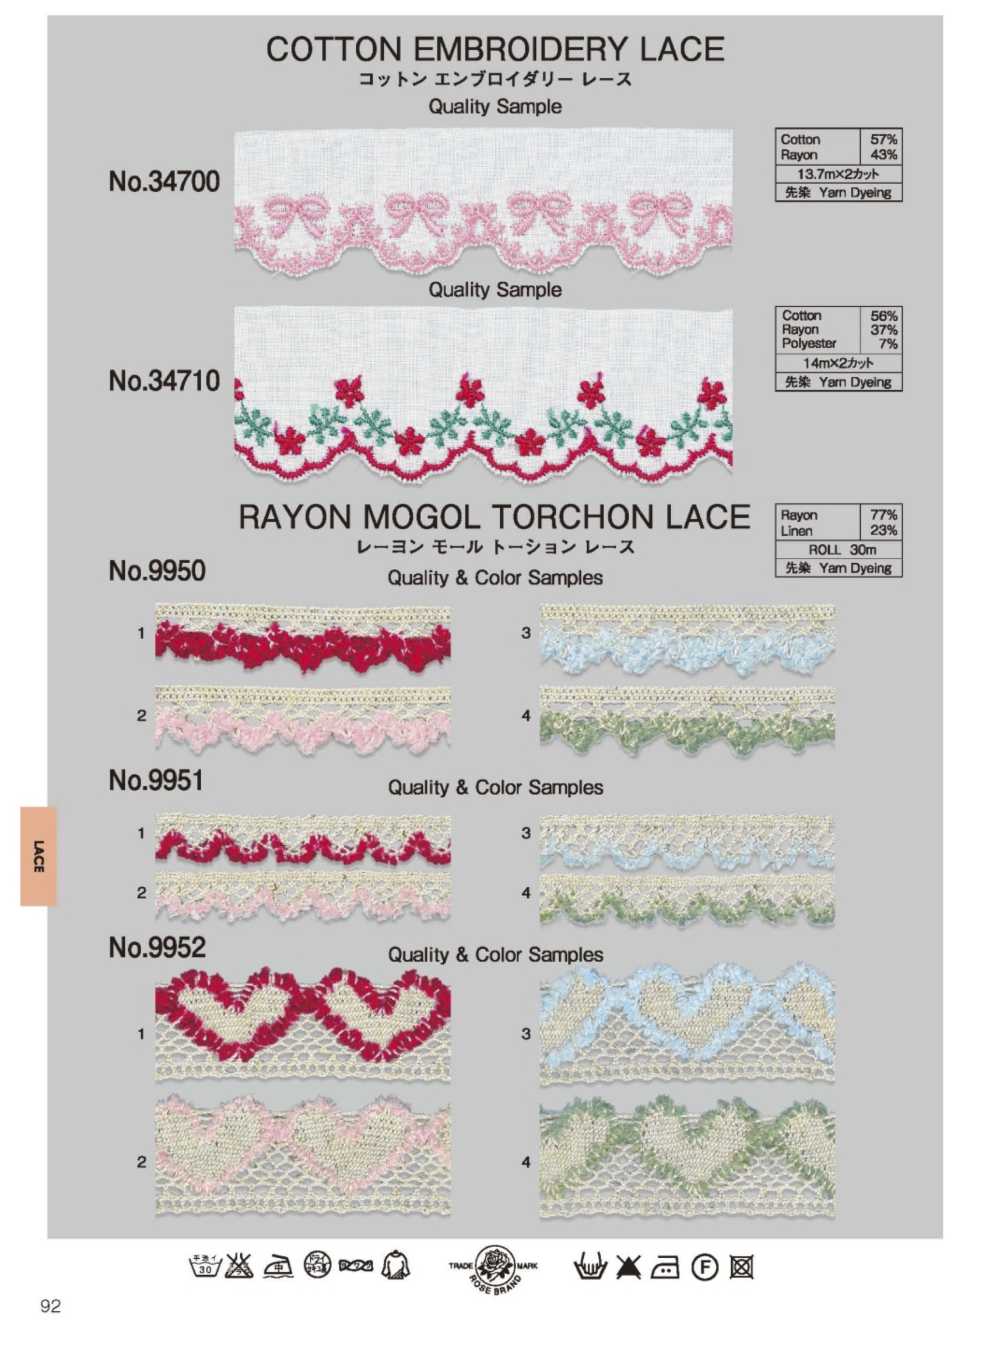 9952 Rayon Mole Torsion Lace ROSE BRAND (Marushin)